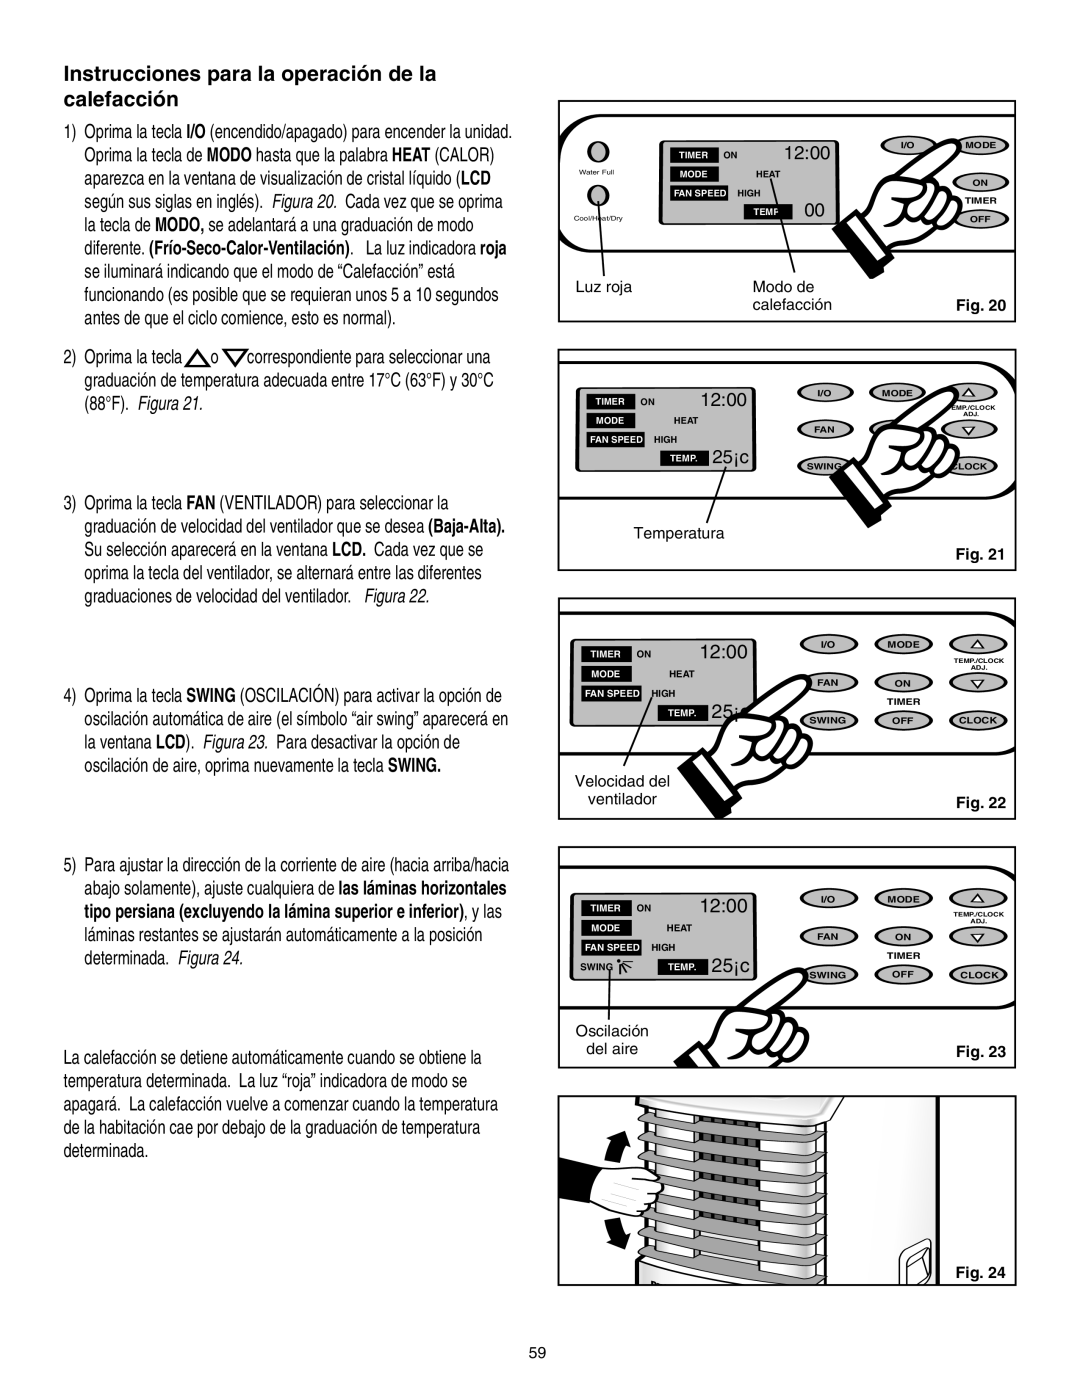 Danby SPAC8499 manual Instrucciones para la operación de la calefacción, 12:00, 25¡c 